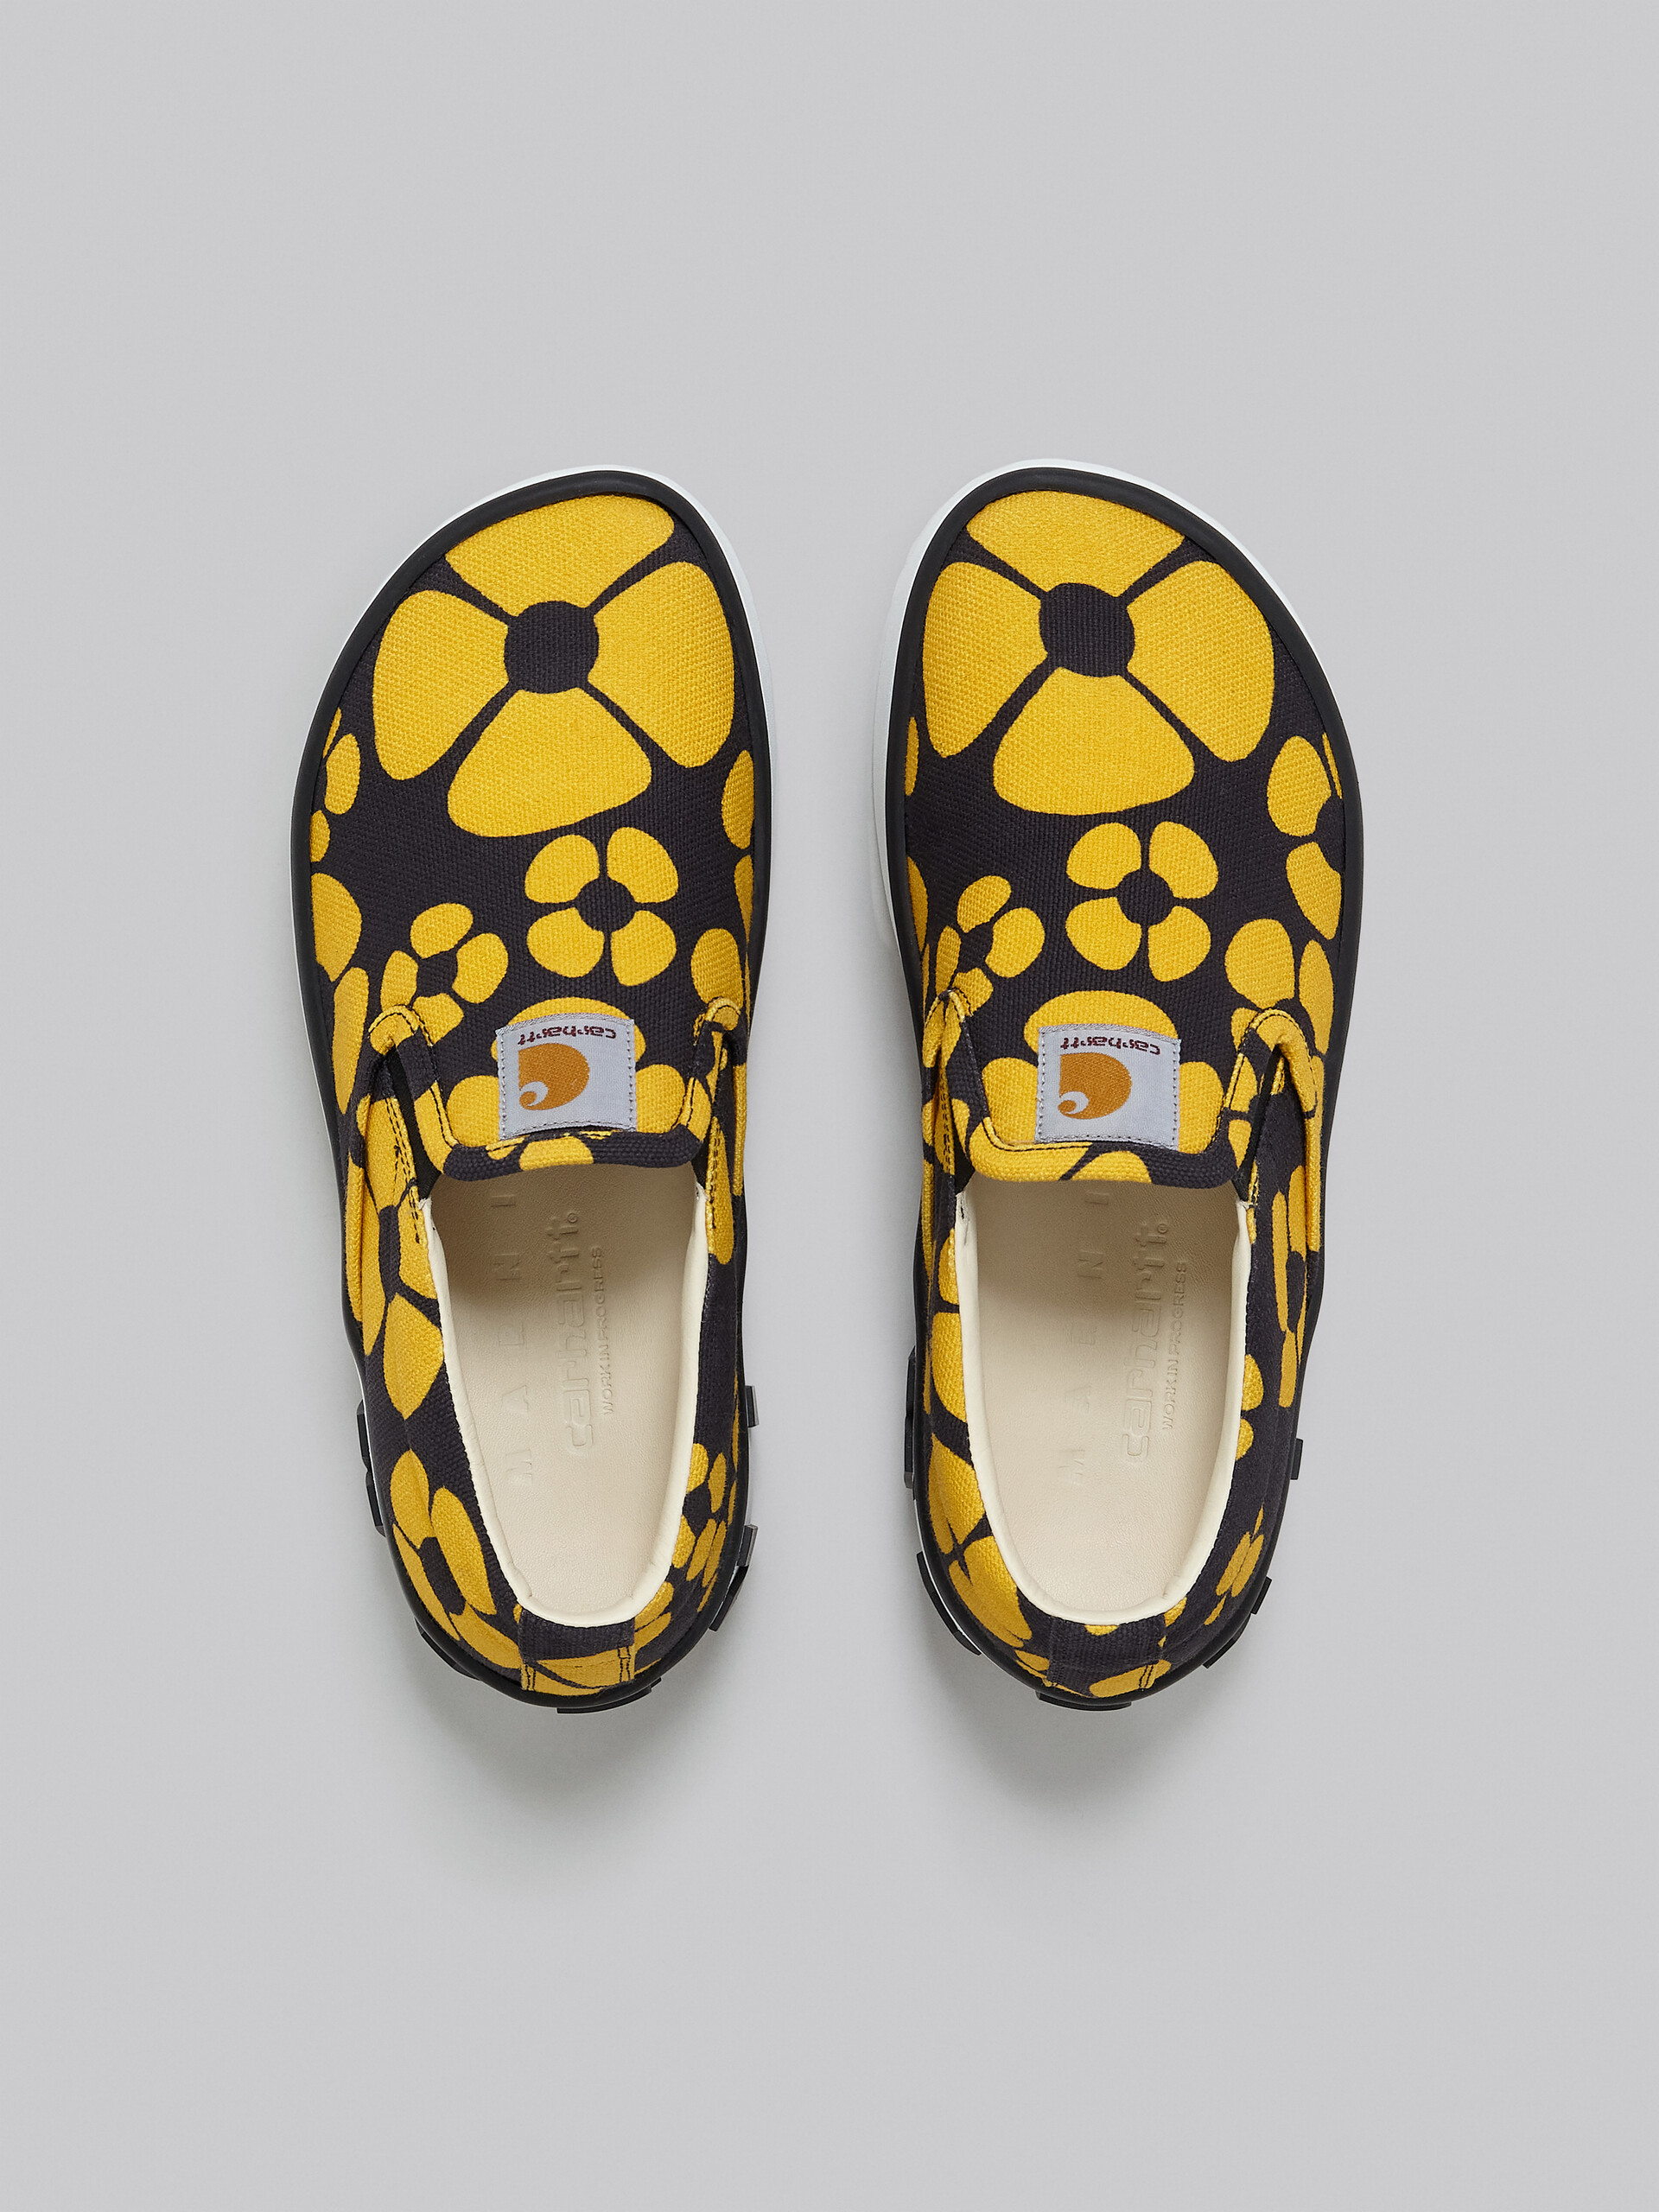 MARNI x CARHARTT WIP - yellow slip-on sneakers - Sneakers - Image 4